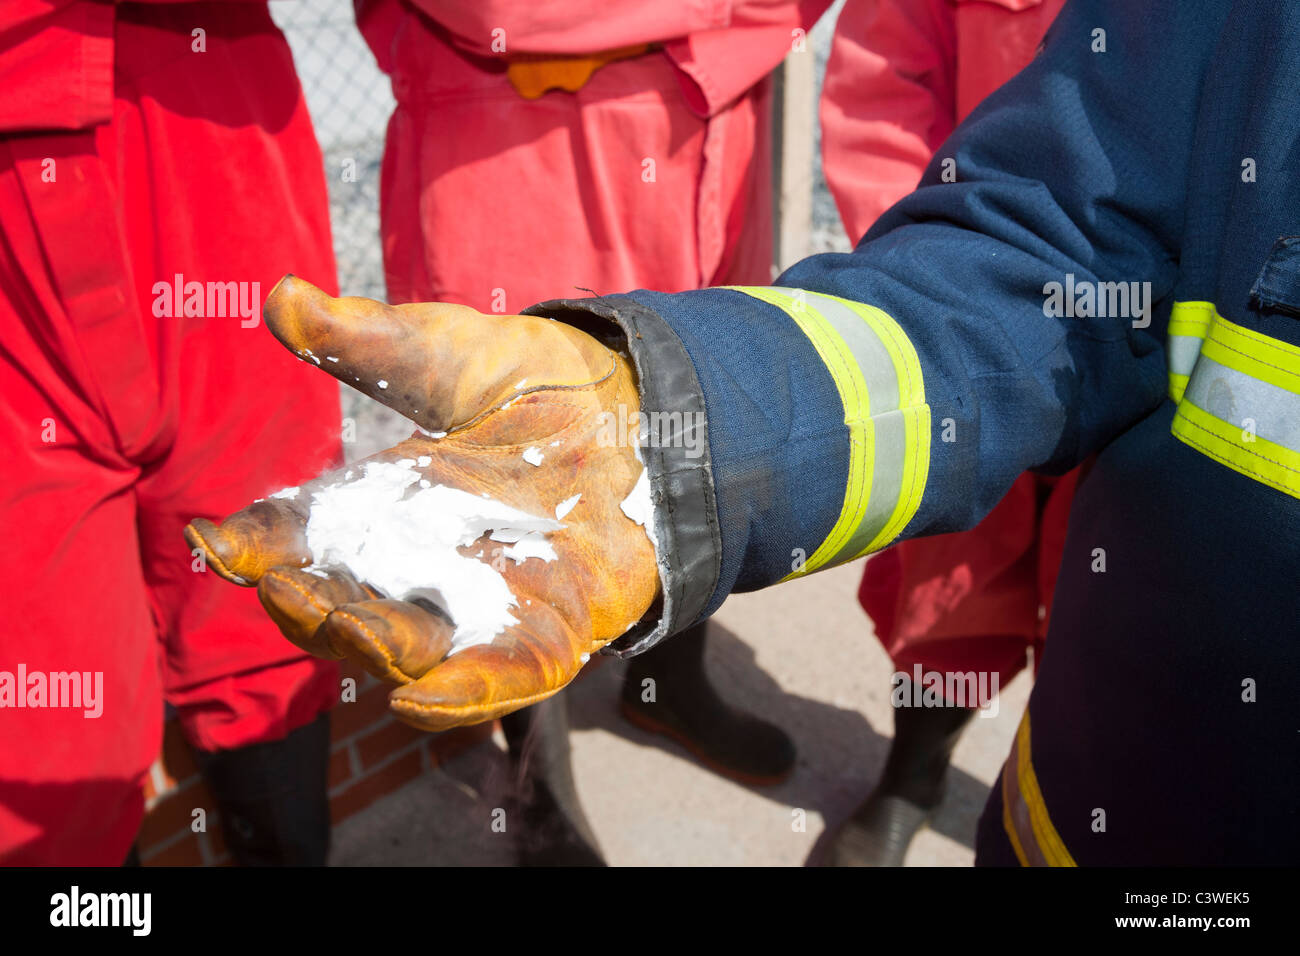 Ein Feuerwehrmann Demostrates der gefrorene Rückstand aus einem C02-Feuerlöscher. Stockfoto